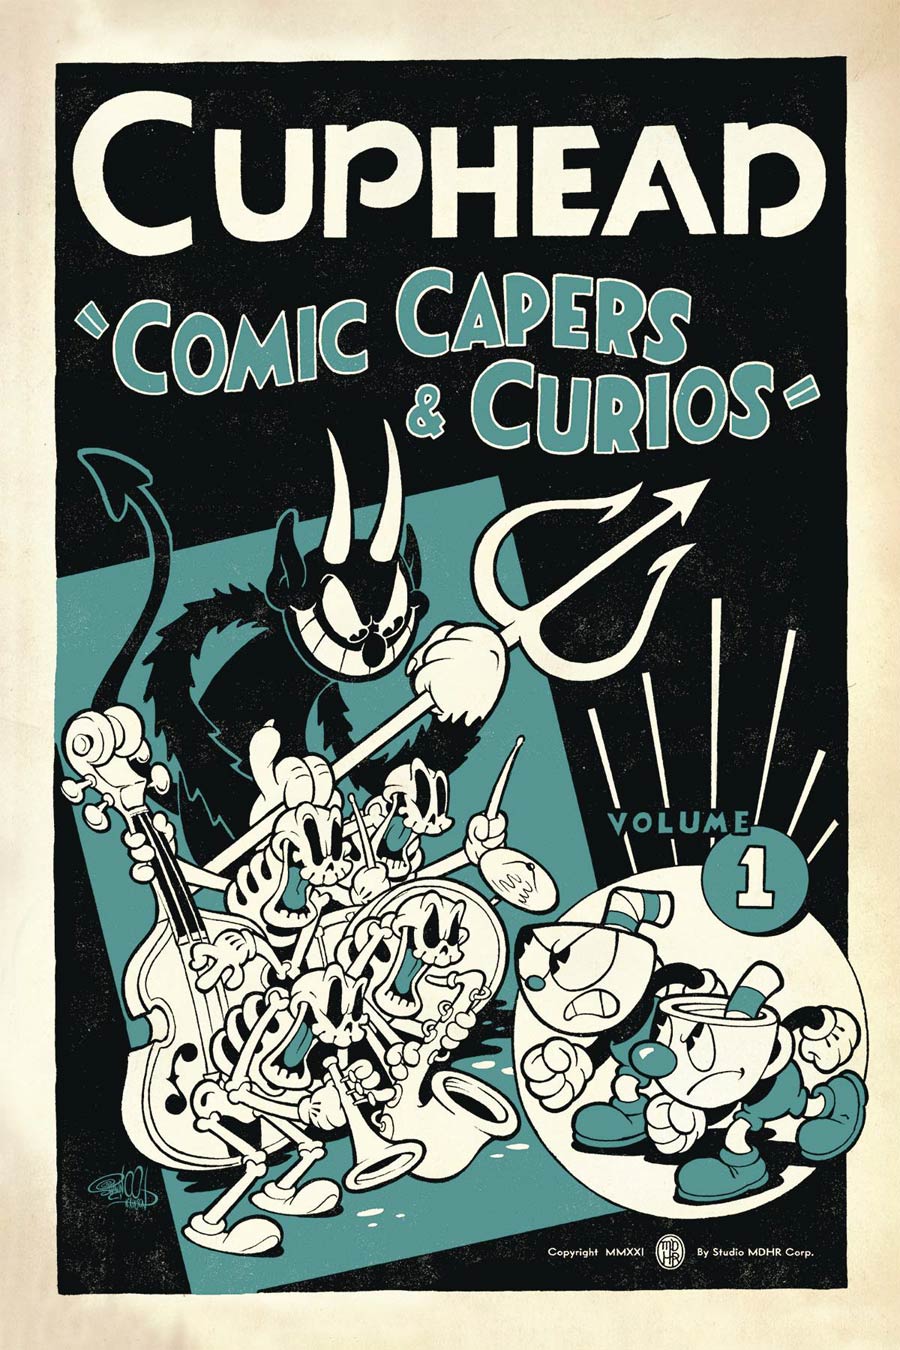 Cuphead Vol 1 Comic Capers & Curios TP